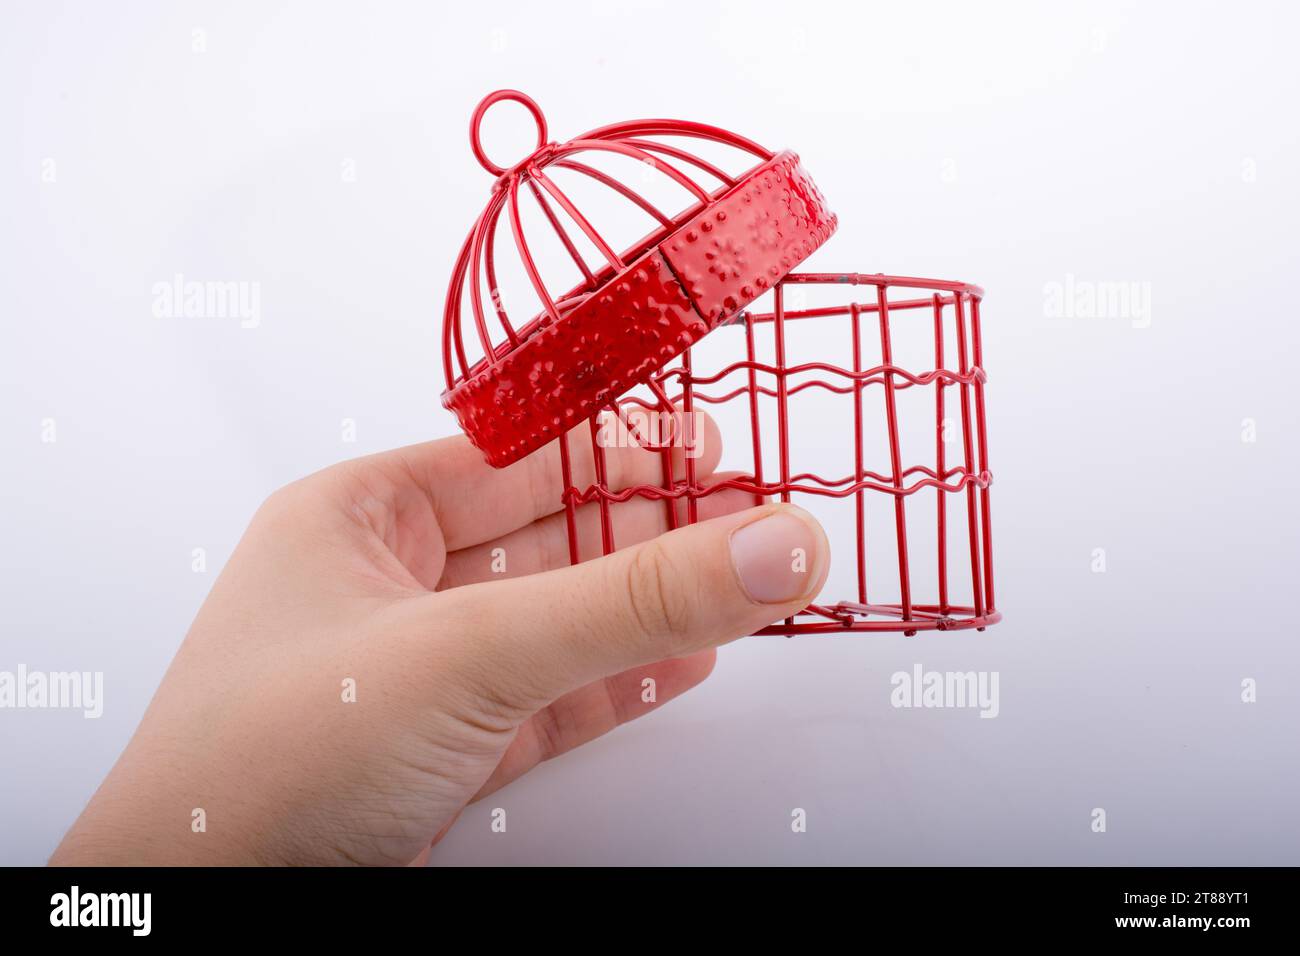 Petite maison d'oiseau de couleur rouge avec des barres de métal sur un fond blanc Banque D'Images